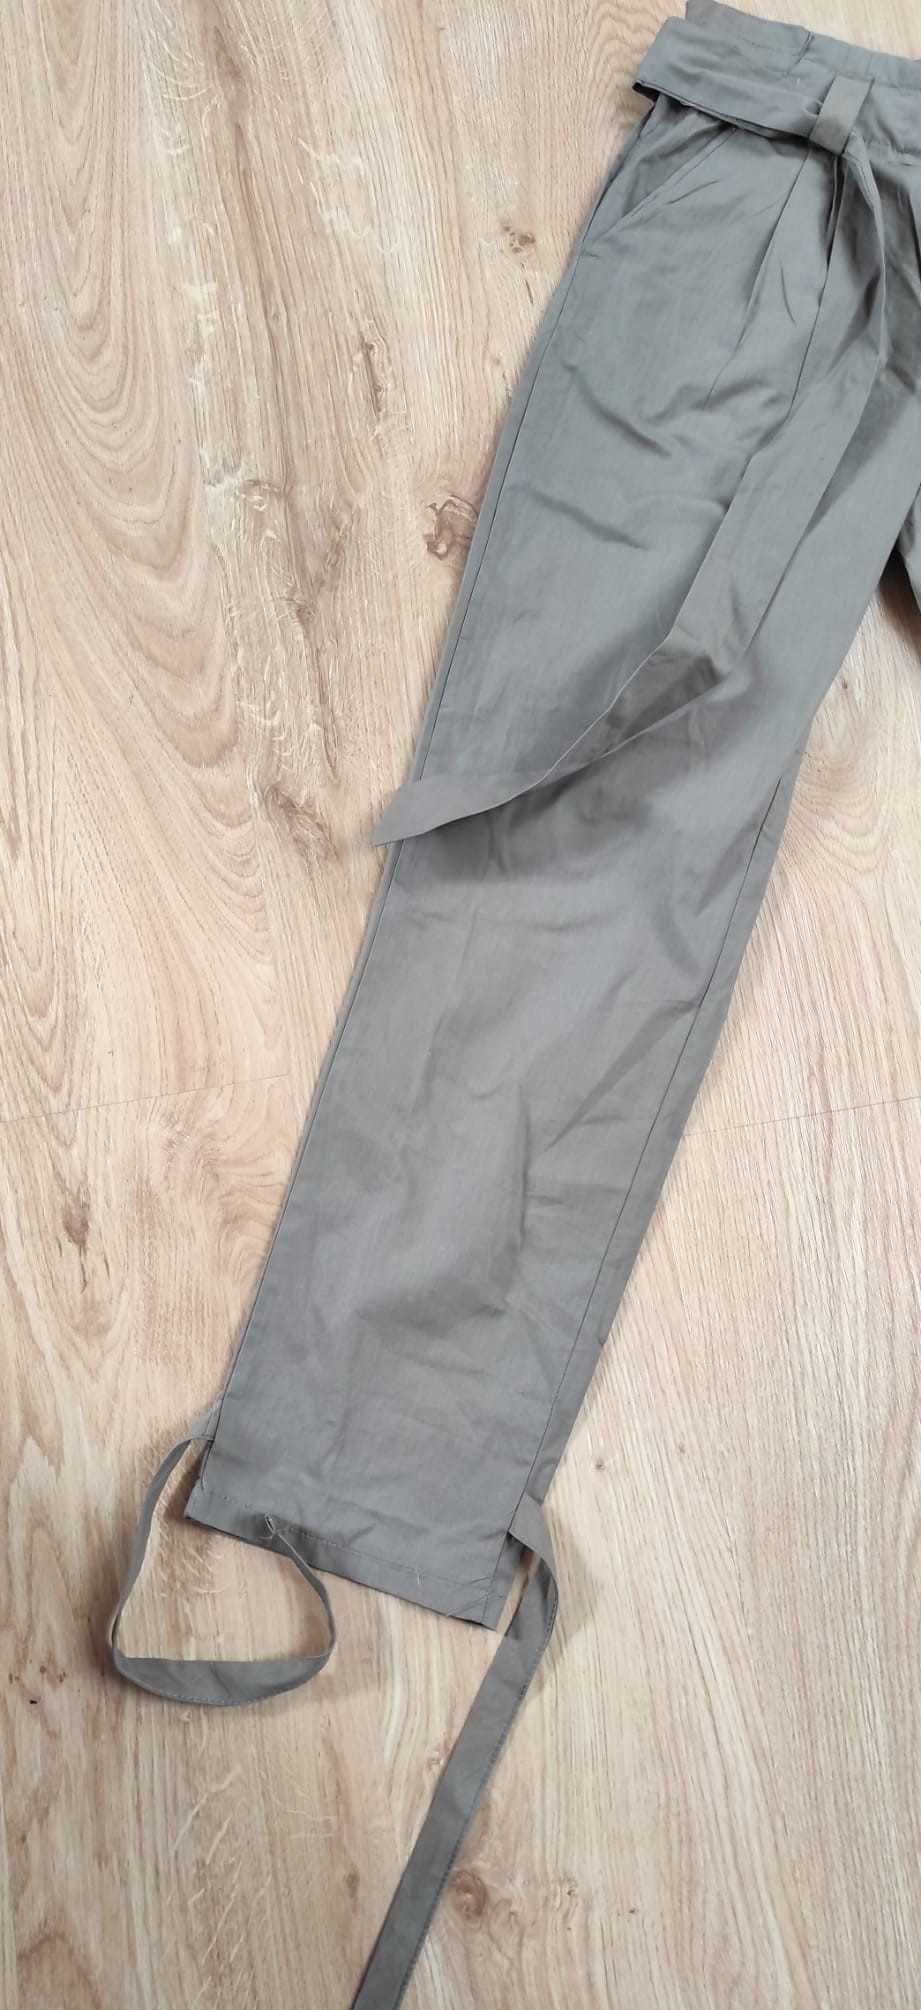 Spodnie haremki alladynki wiązane nogawkie